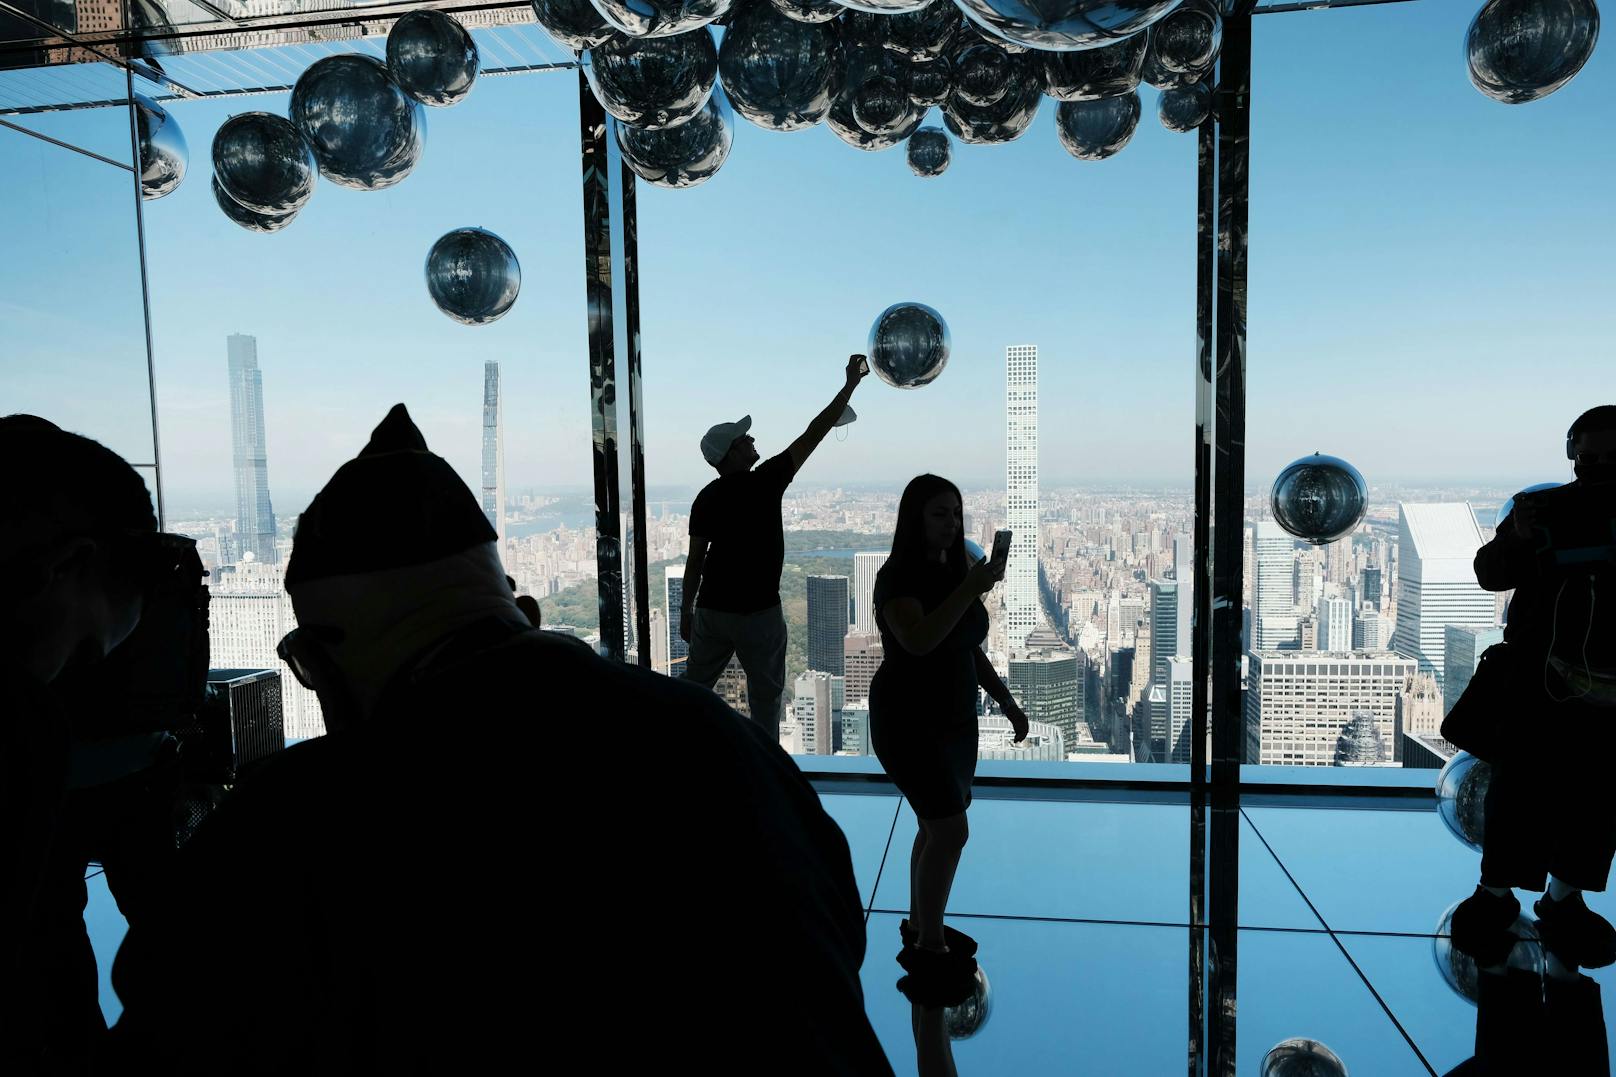 Eine neue Aussichtsplattform in Manhatten (NYC) ist wohl ein neues Highlight für Touristen. <br>